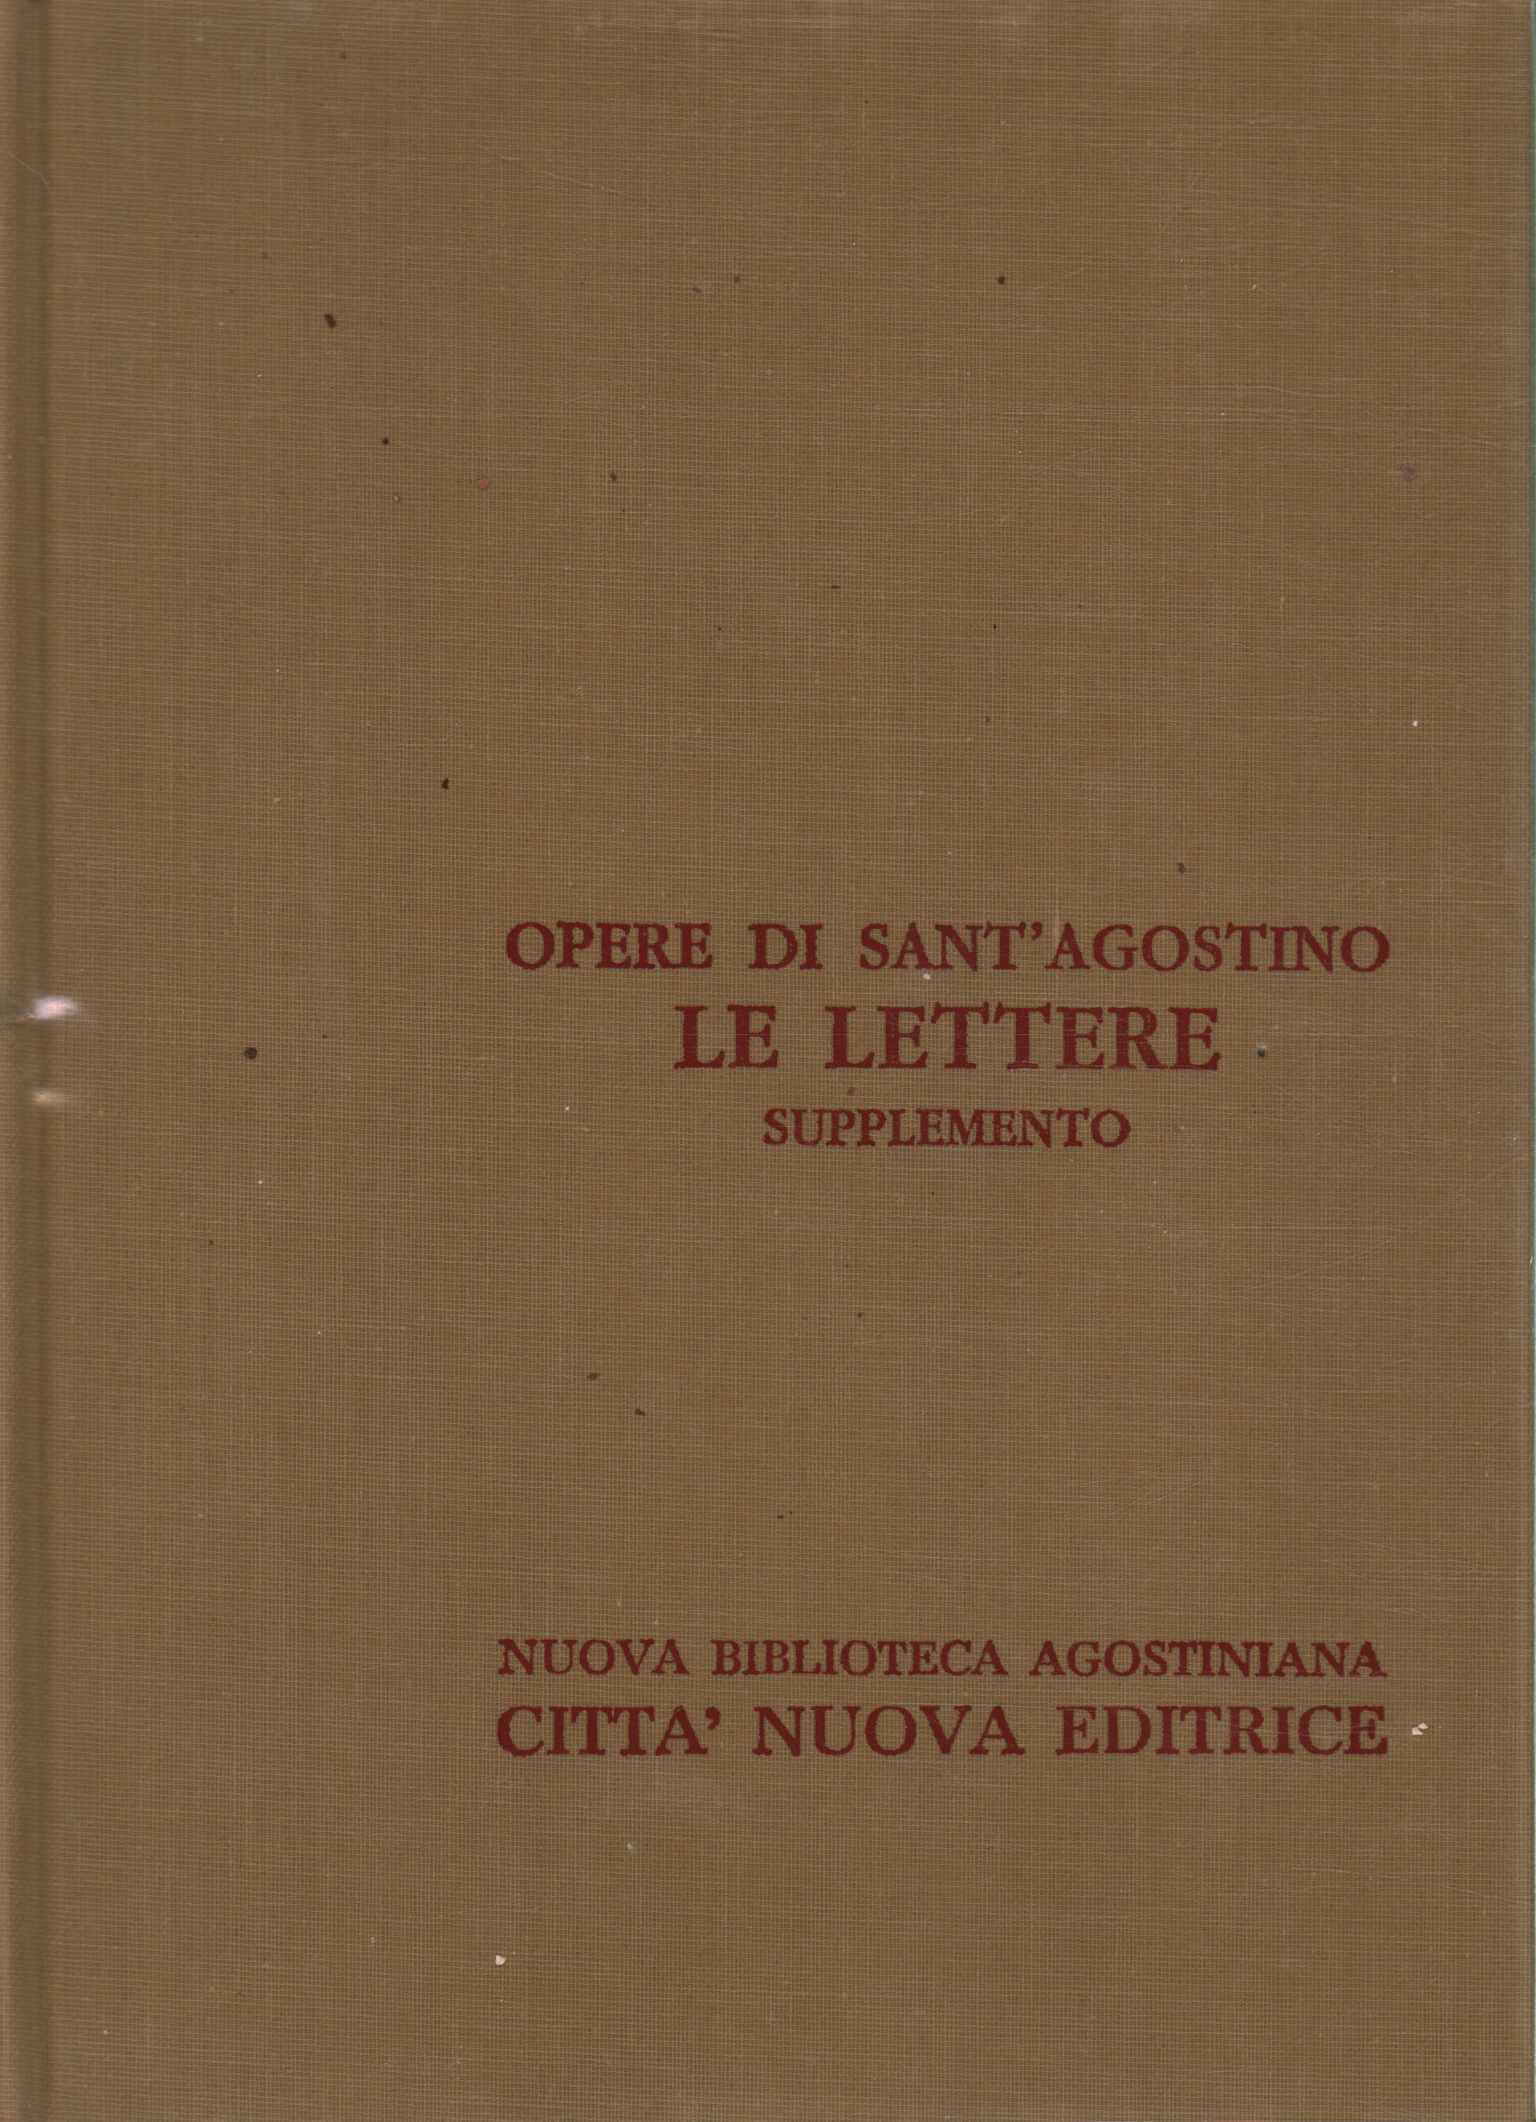 Obras de Sant'Agostino XXIII/A.%2,Obras de Sant'Agostino XXIII/A.%2